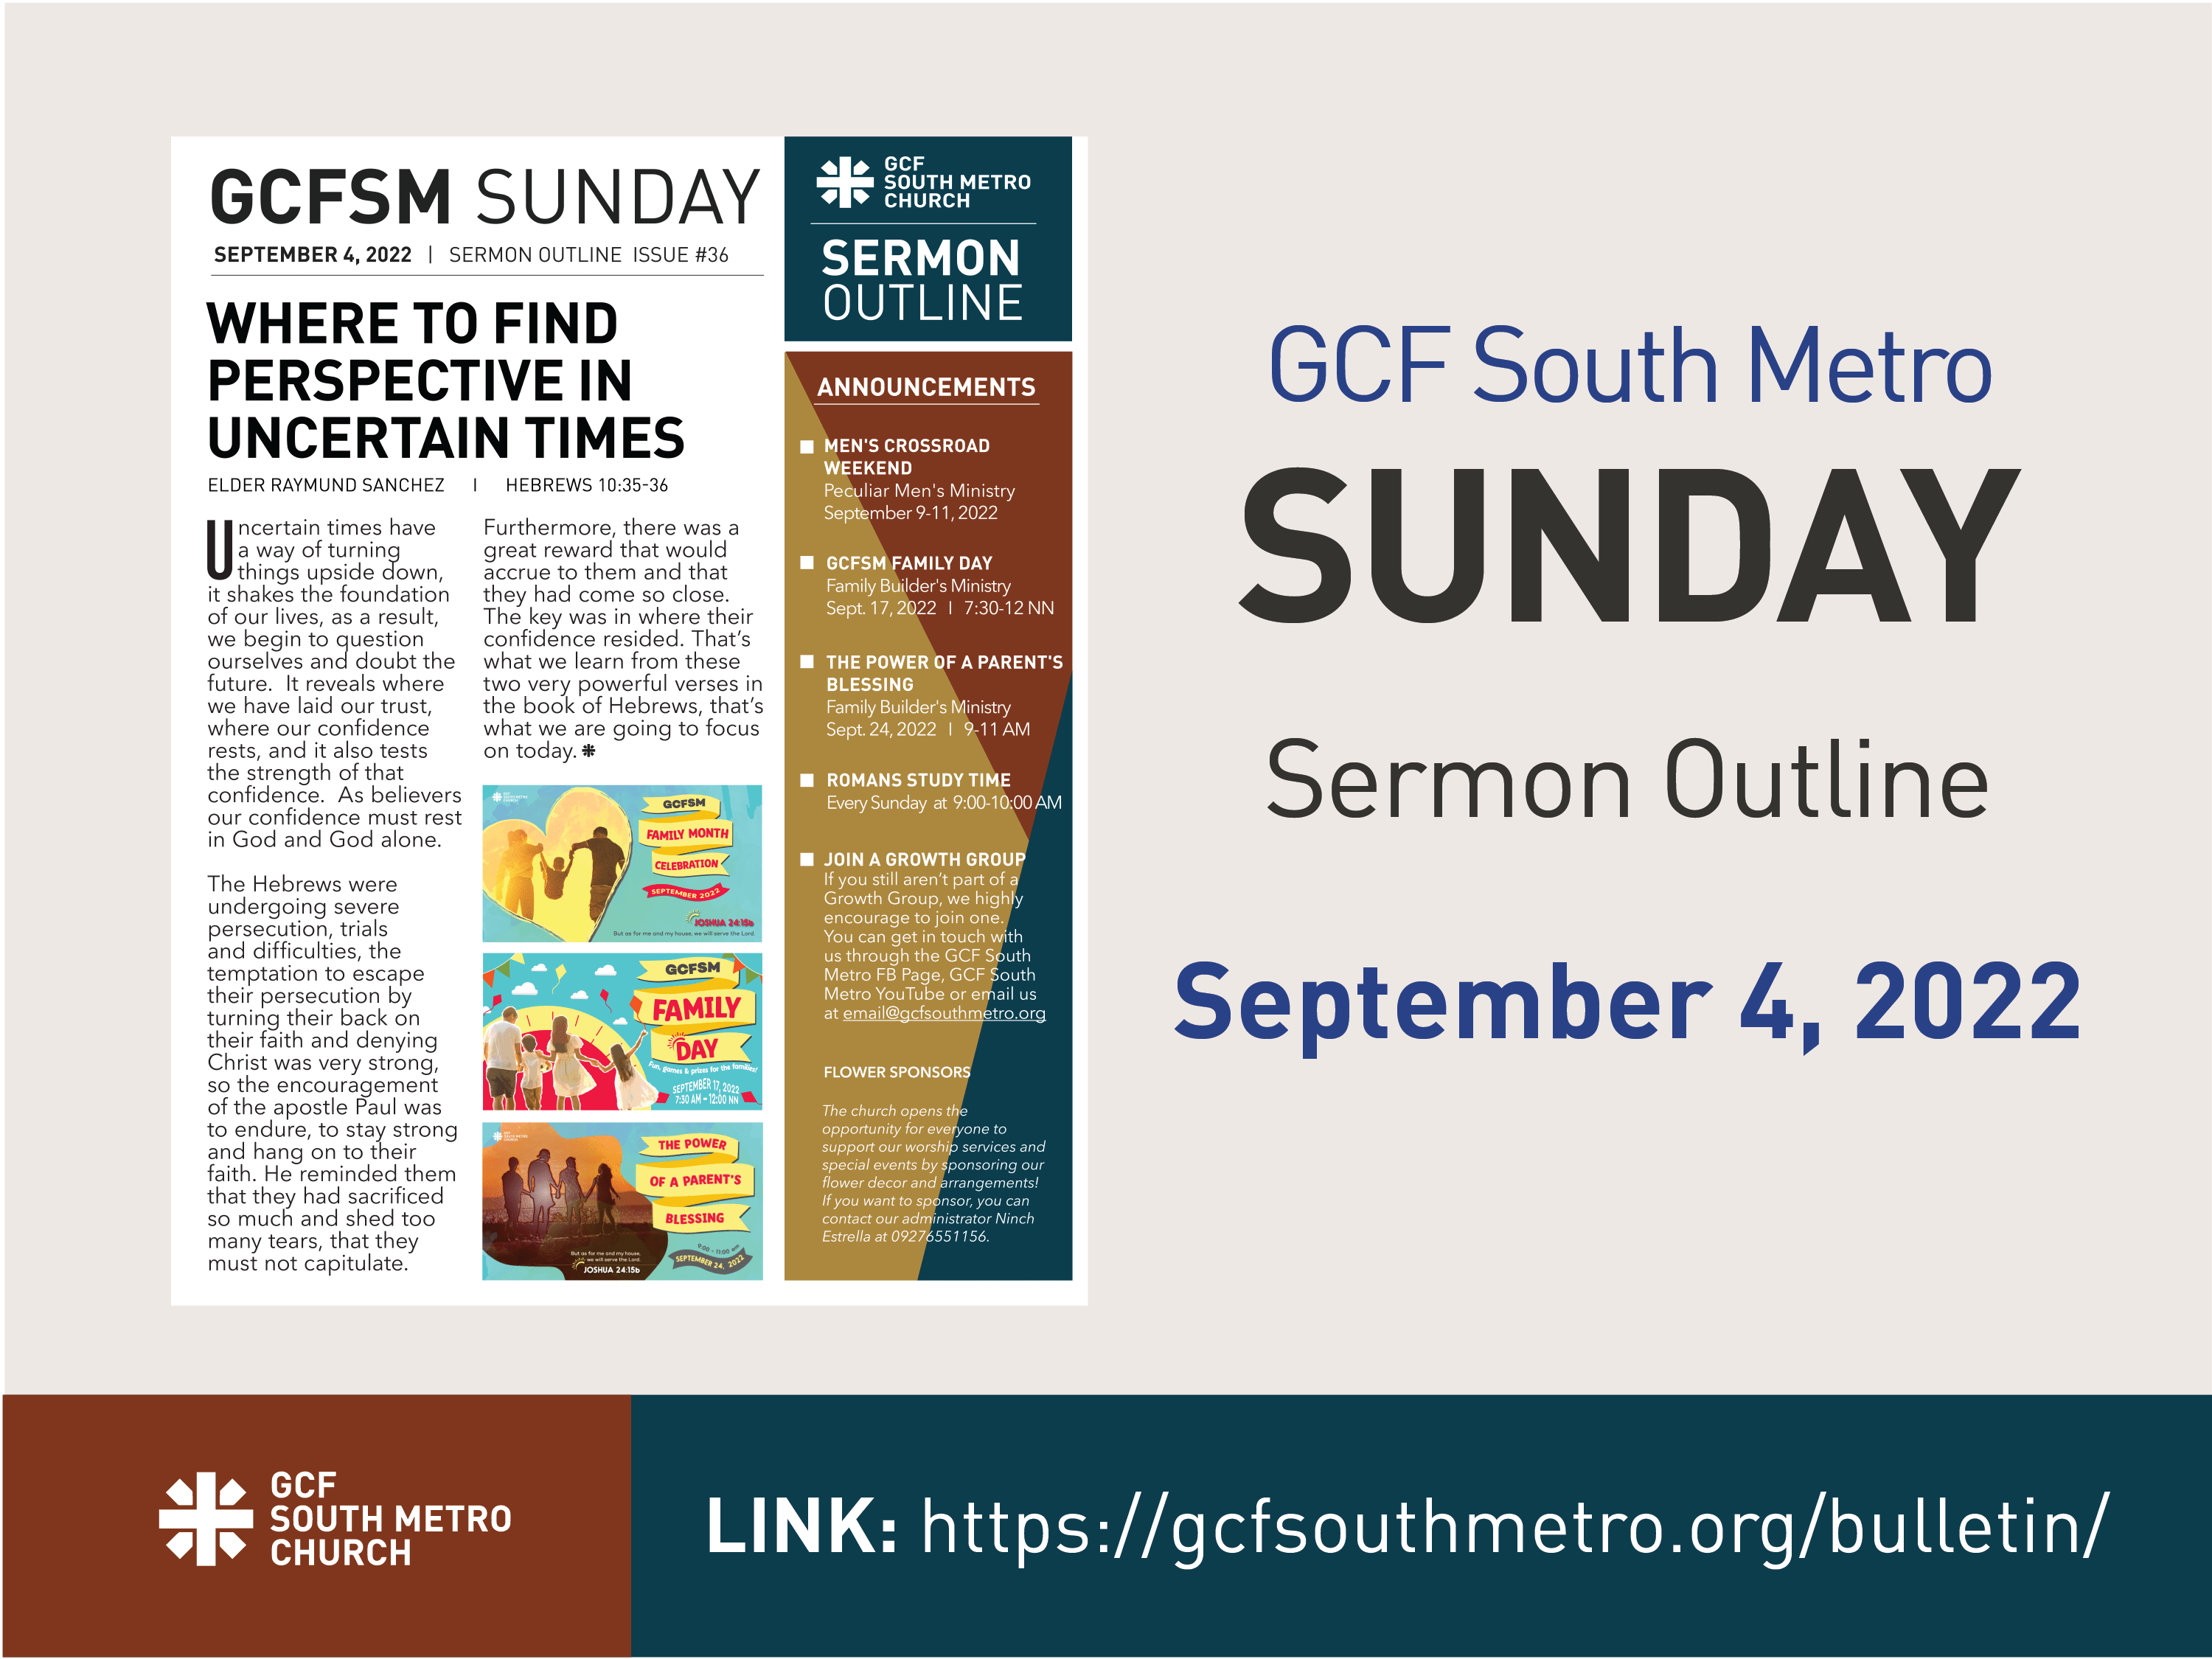 Sunday Bulletin – Sermon Outline, September 4, 2022